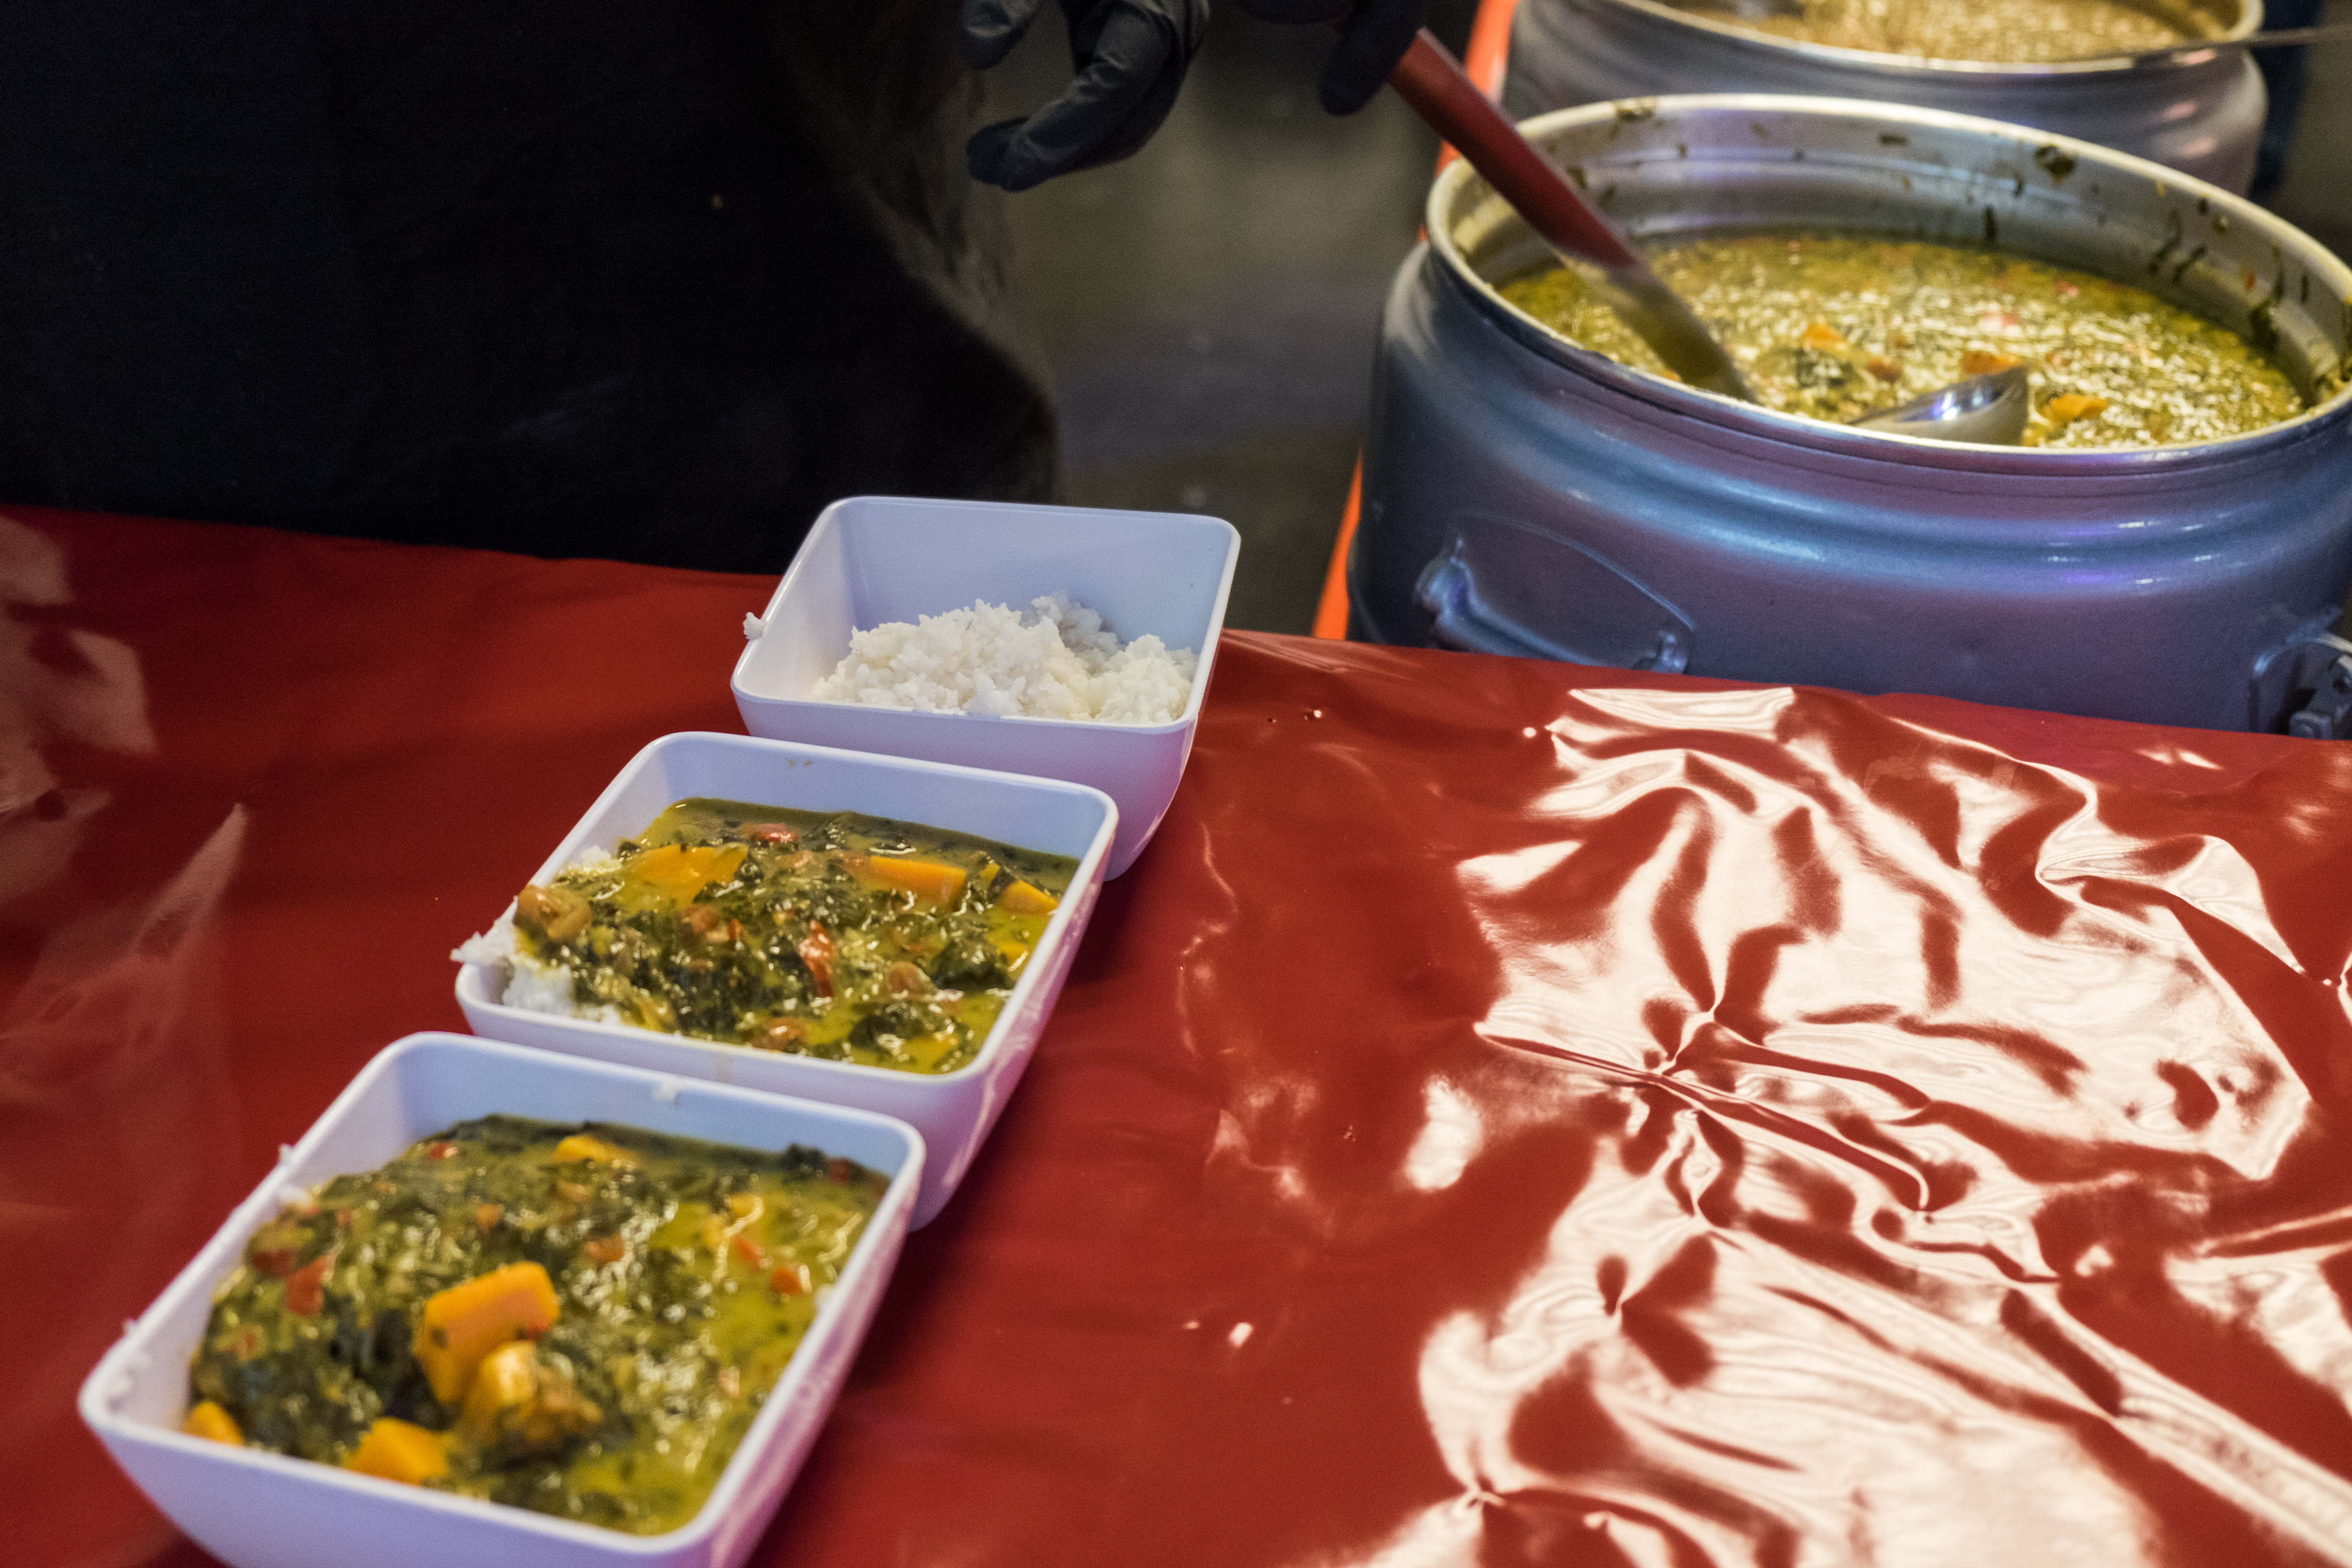 Im Vordergrund stehen zwei Schalen mit Curry, gefolgt von einer dritten, die nur Reis enthält. Im Hintergrund befindet sich ein großer Bottich voller Curry.